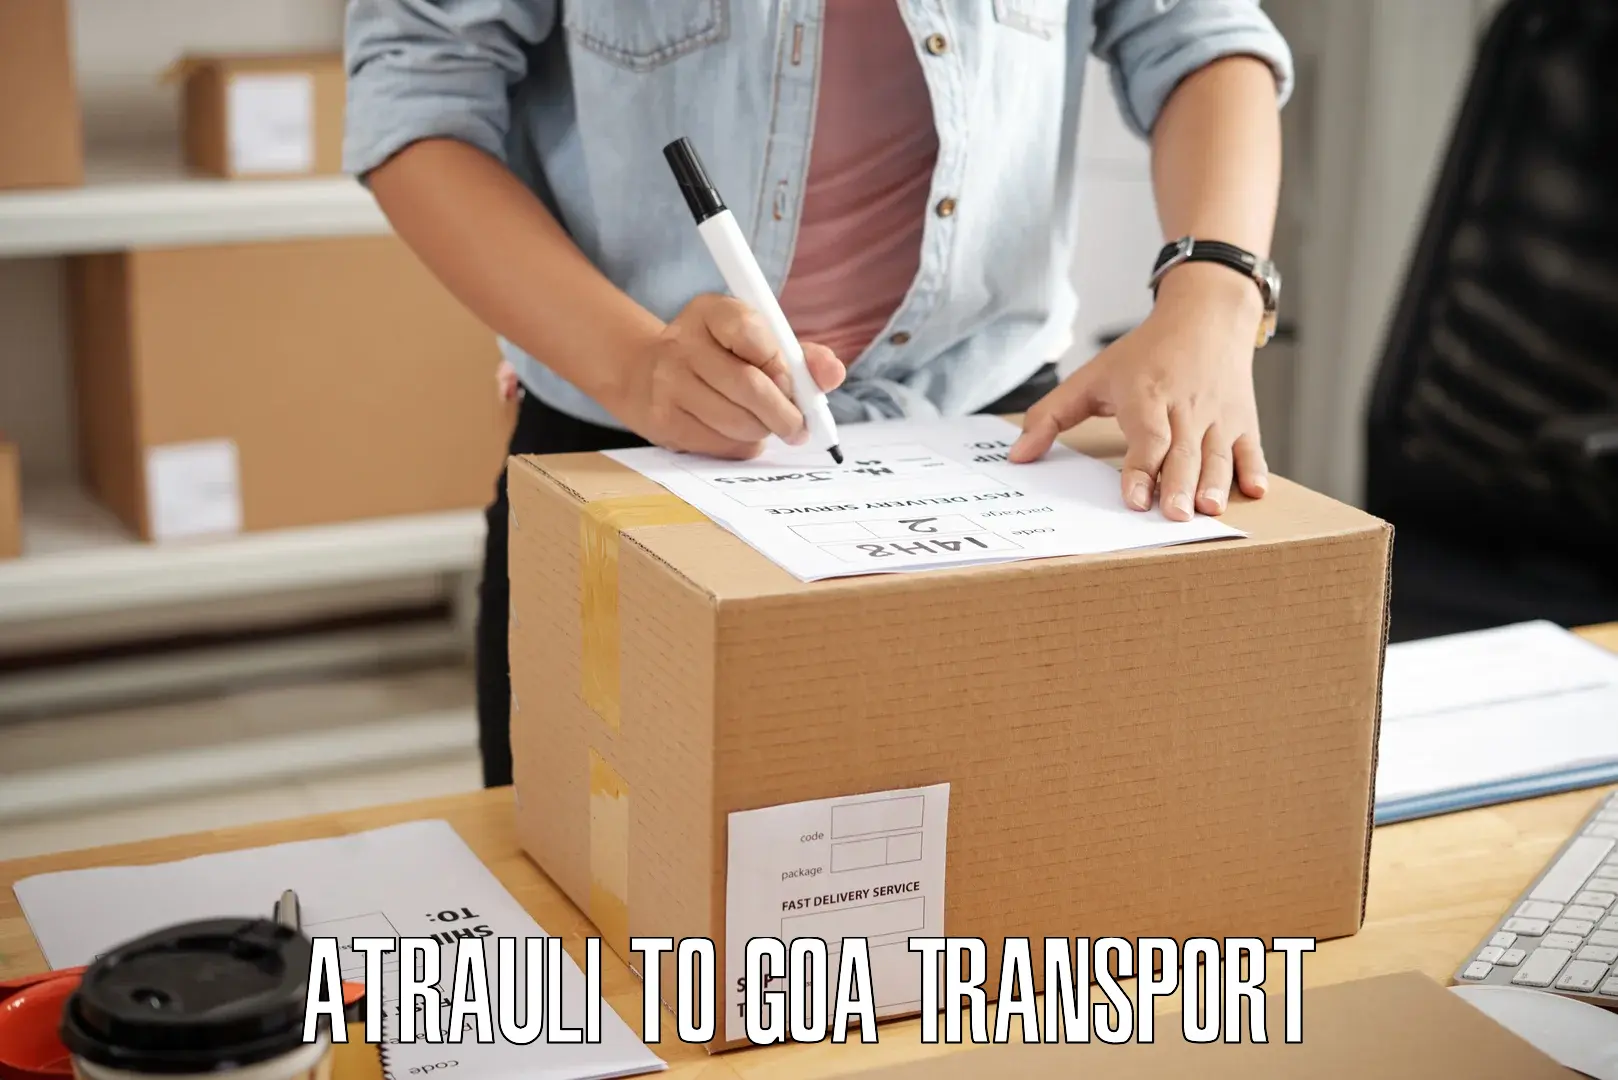 Furniture transport service Atrauli to Vasco da Gama